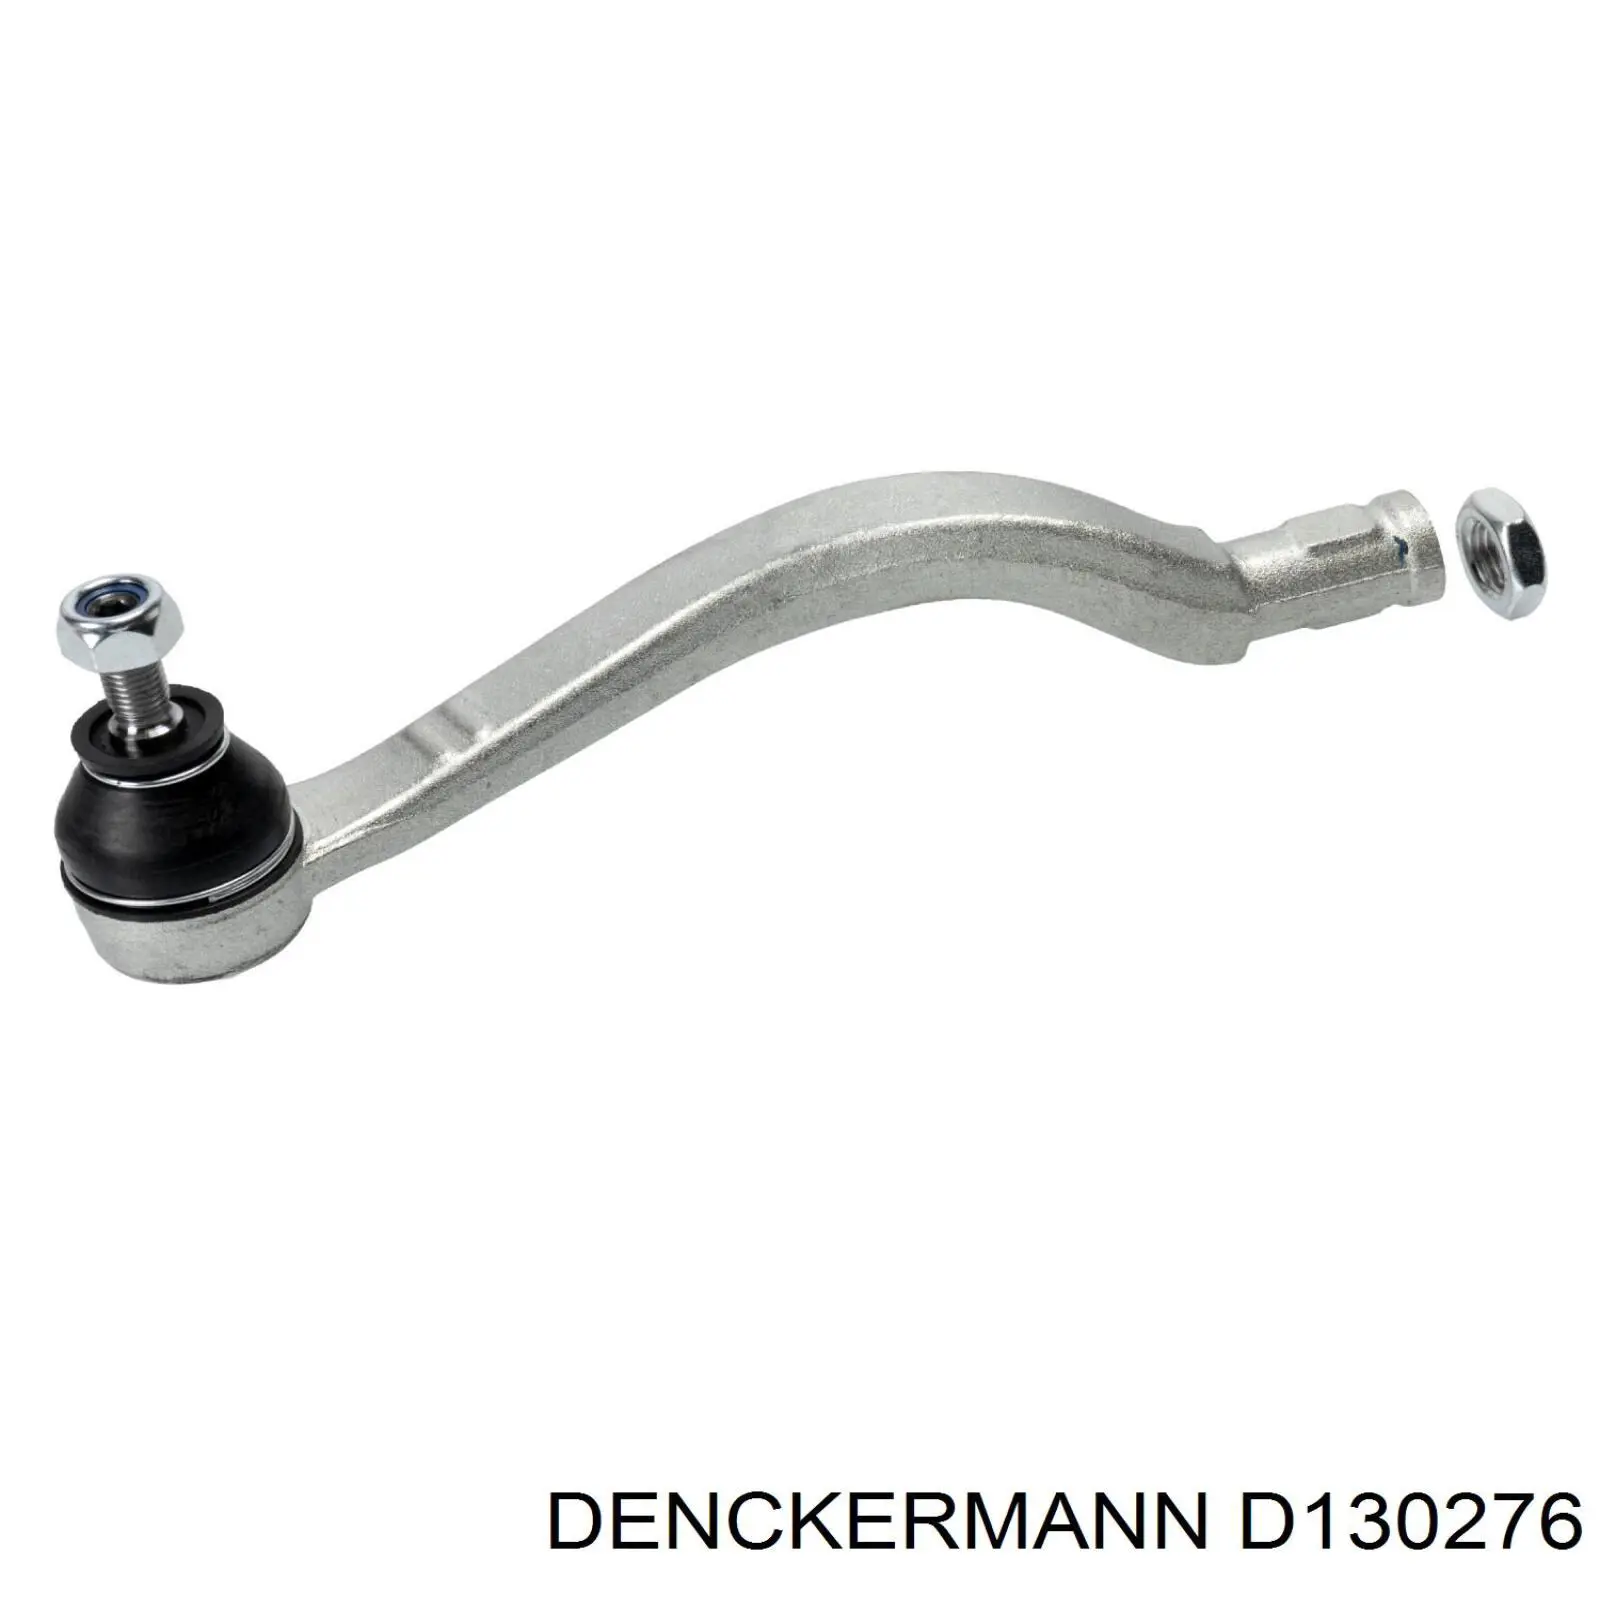 D130276 Denckermann rótula barra de acoplamiento exterior